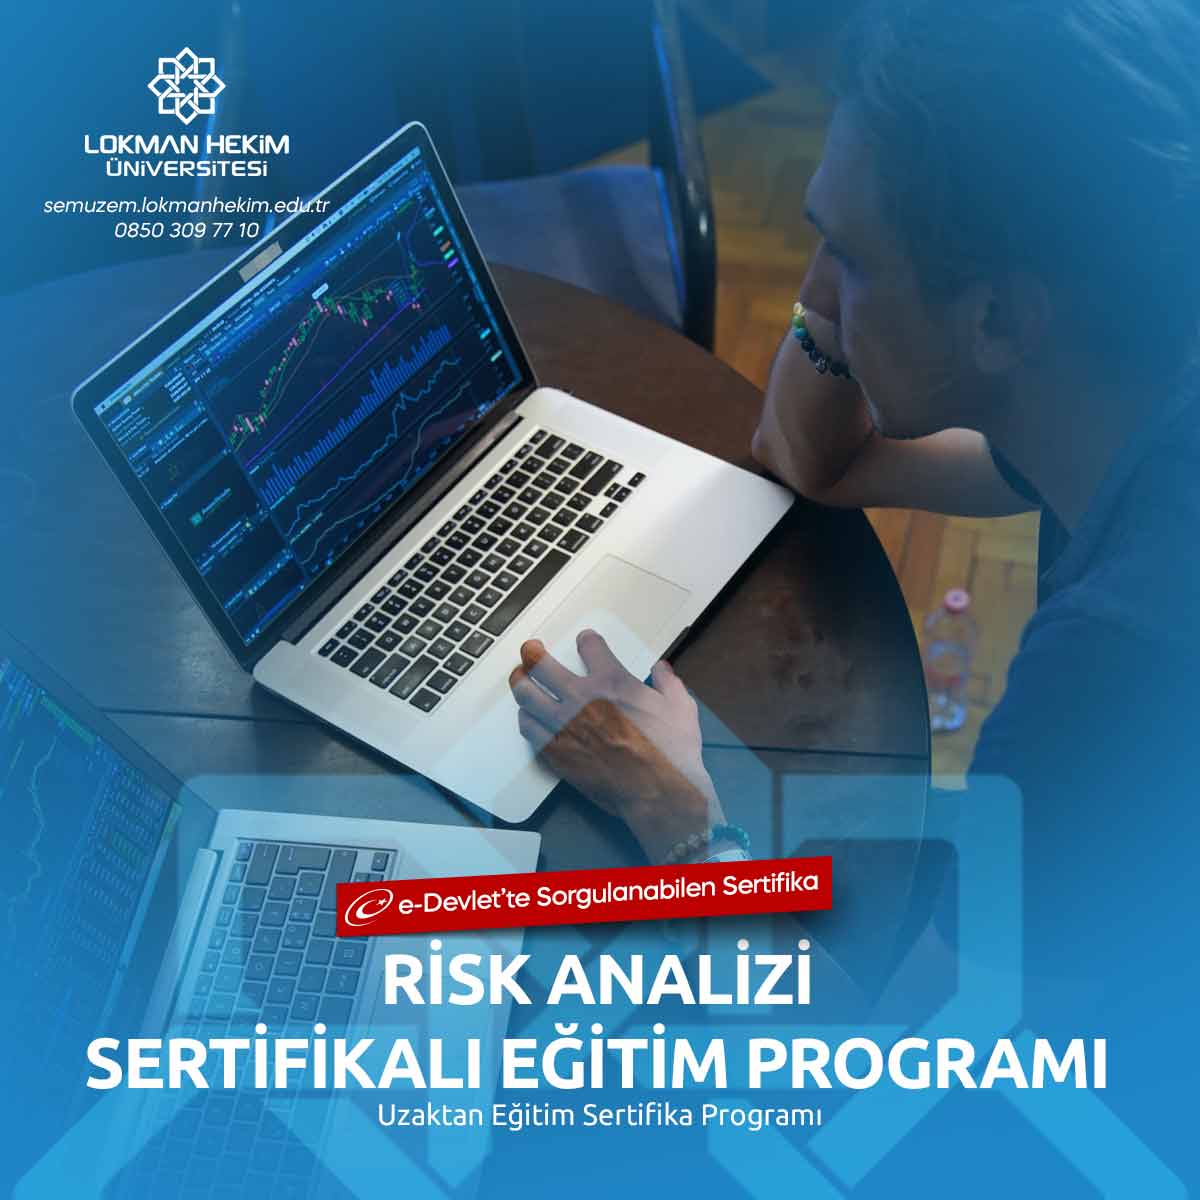 Risk Analizi Sertifikalı Eğitim Programı